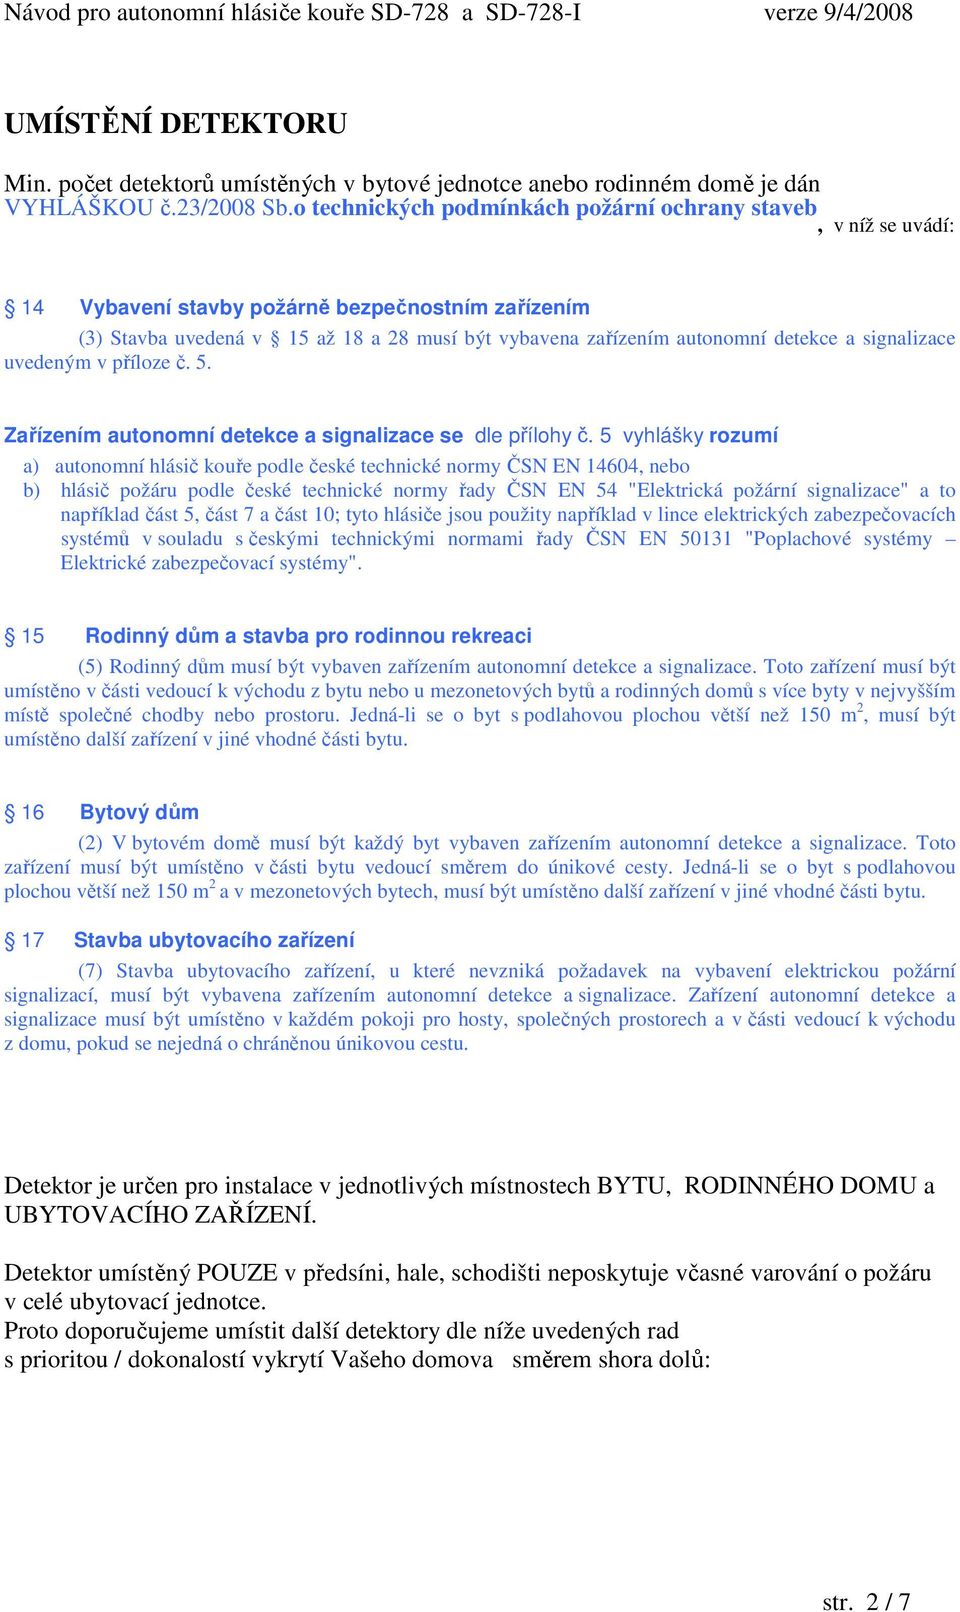 SD-728 SD-728-I DETEKČNÍ OBLAST DETEKTORU. Návod pro autonomní hlásiče  kouře SD-728 a SD-728-I verze 9/4/ PDF Free Download